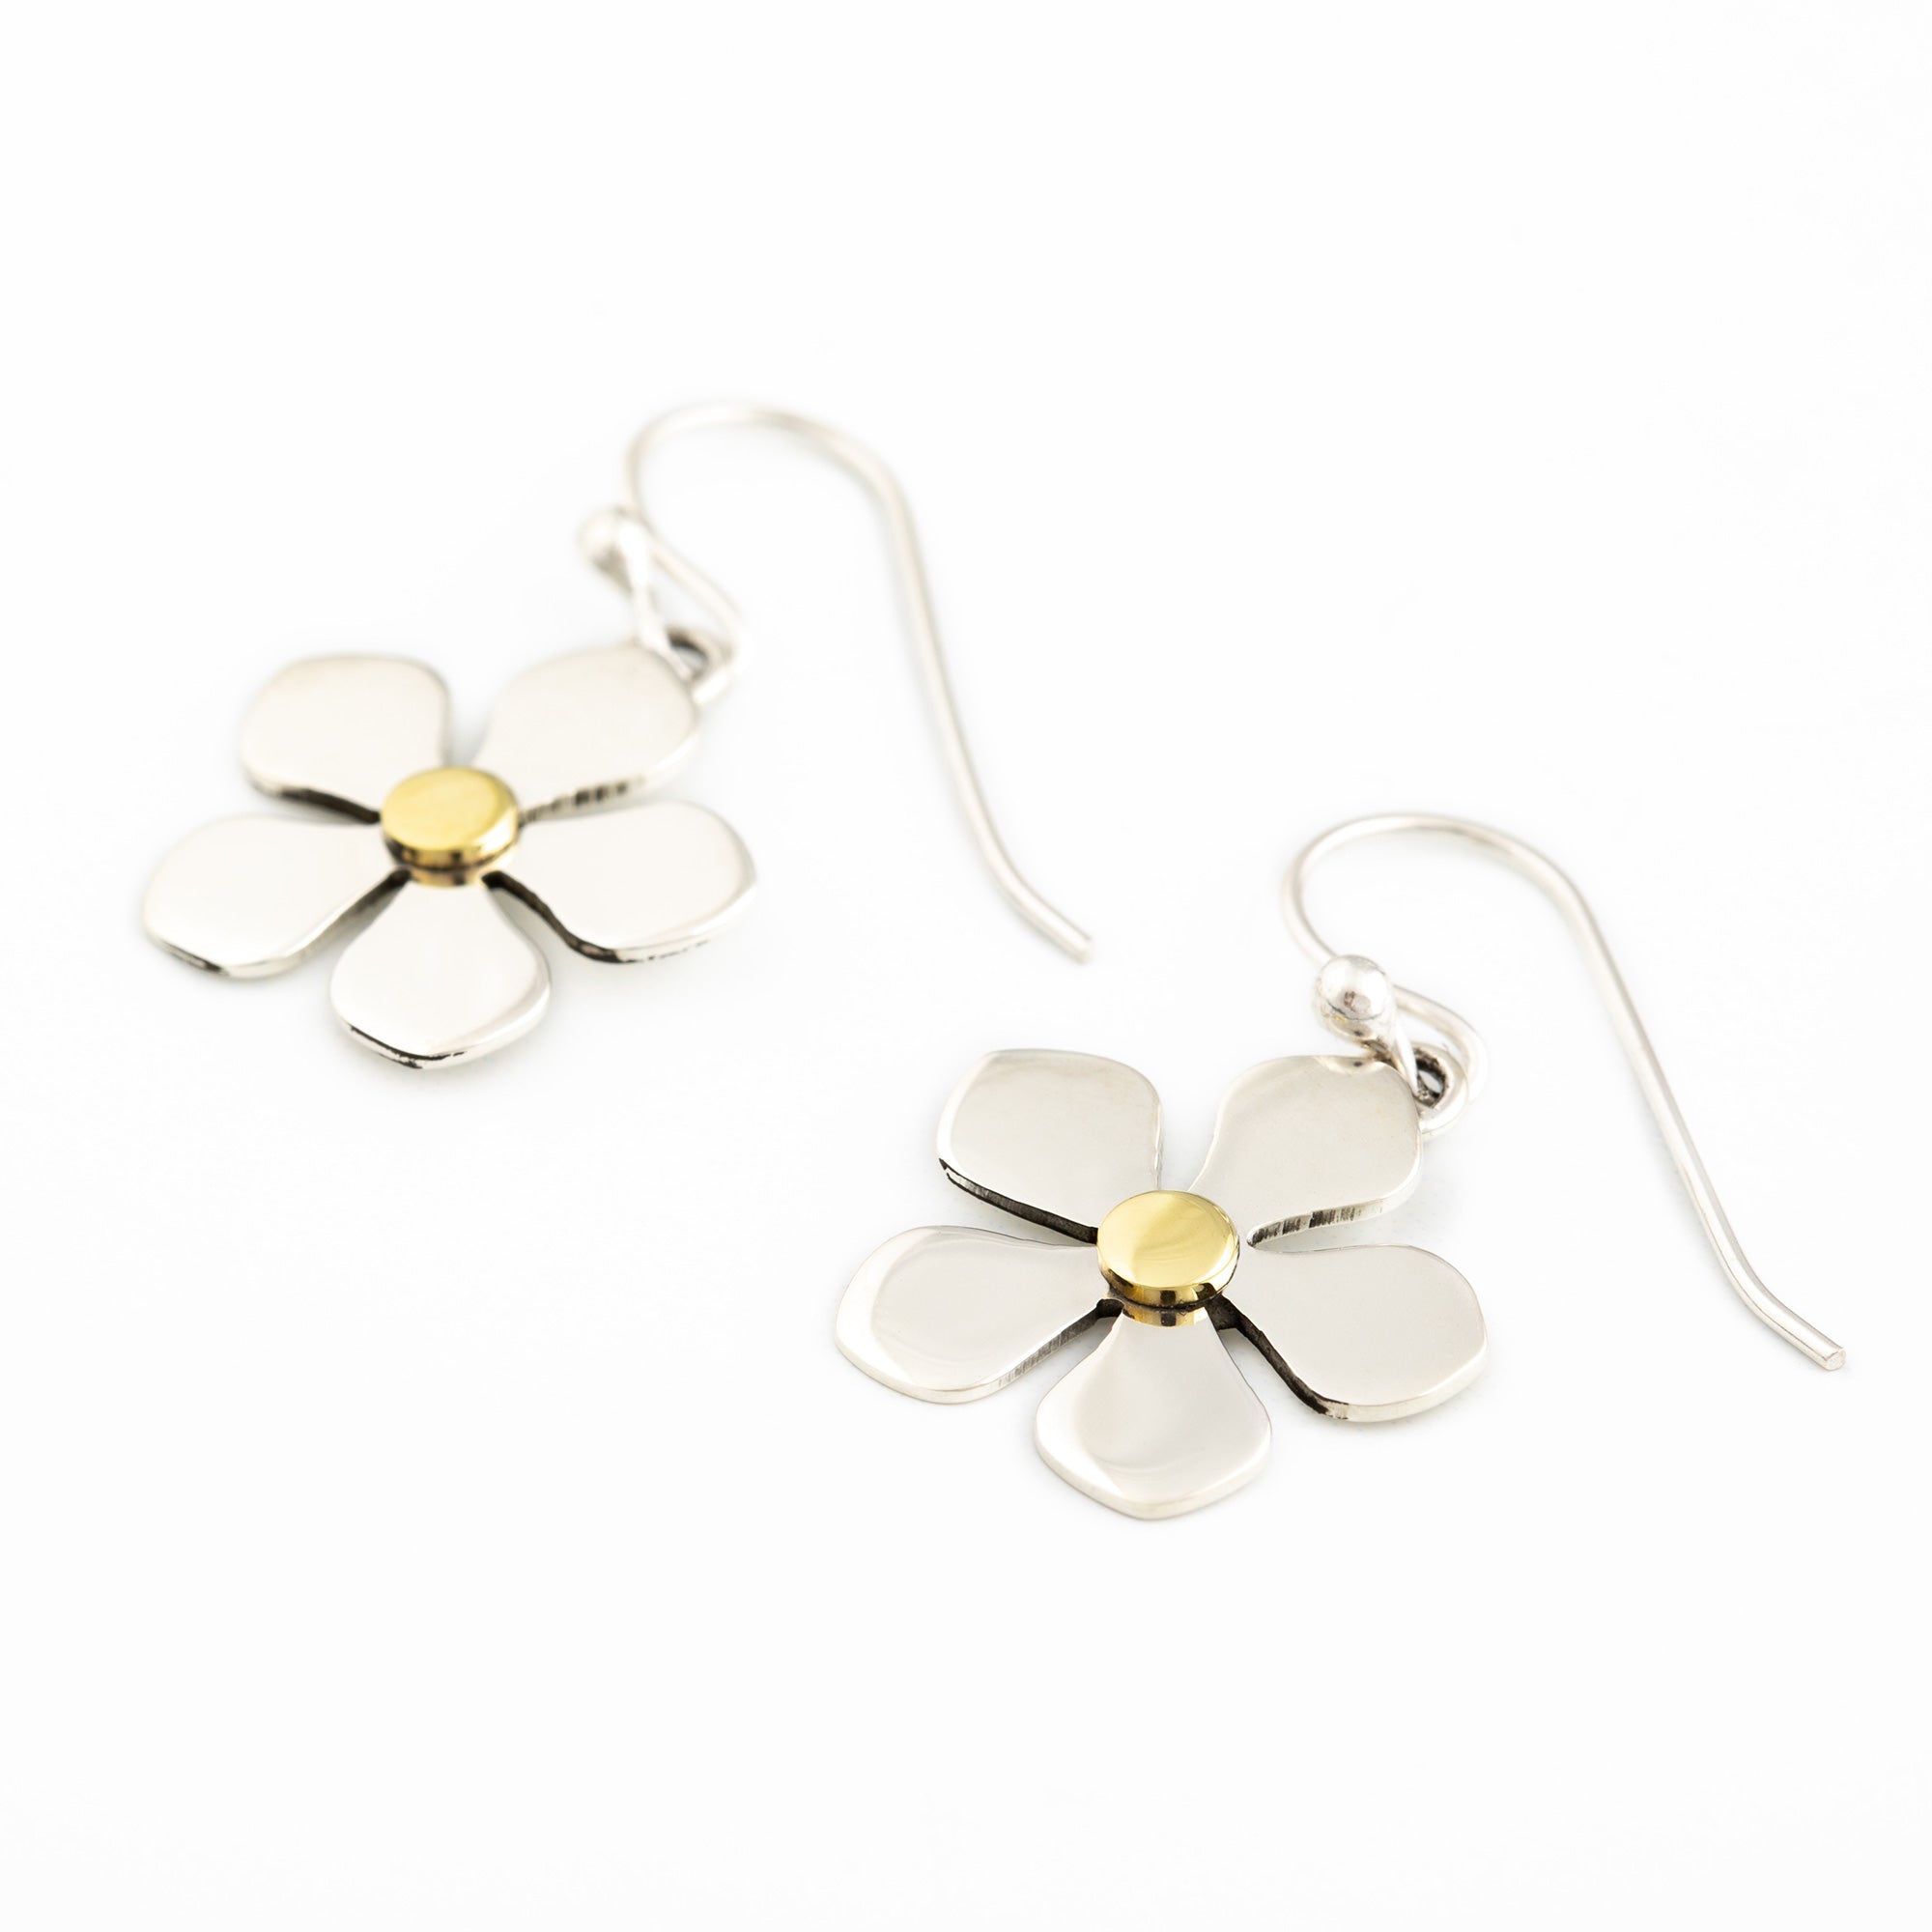 Mixed Metal Dangling Flower Earrings - Daisy